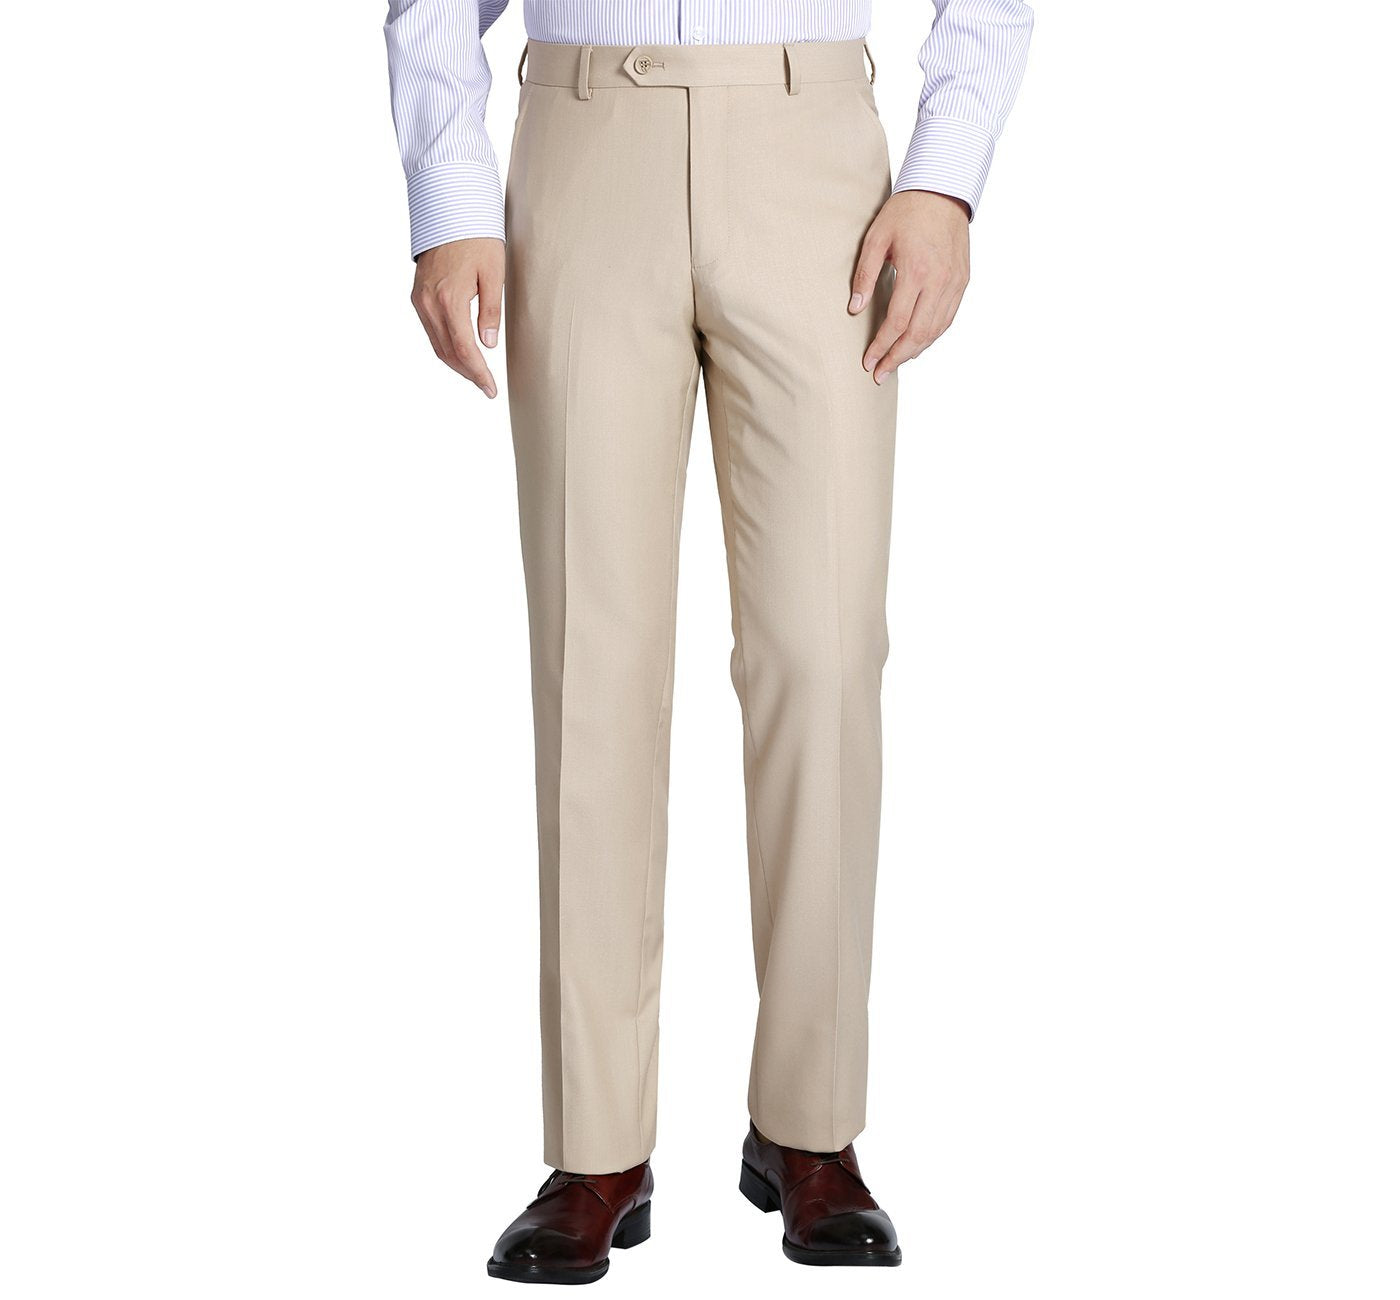 201-3 Men's Beige Flat Front Suit Separate Pants